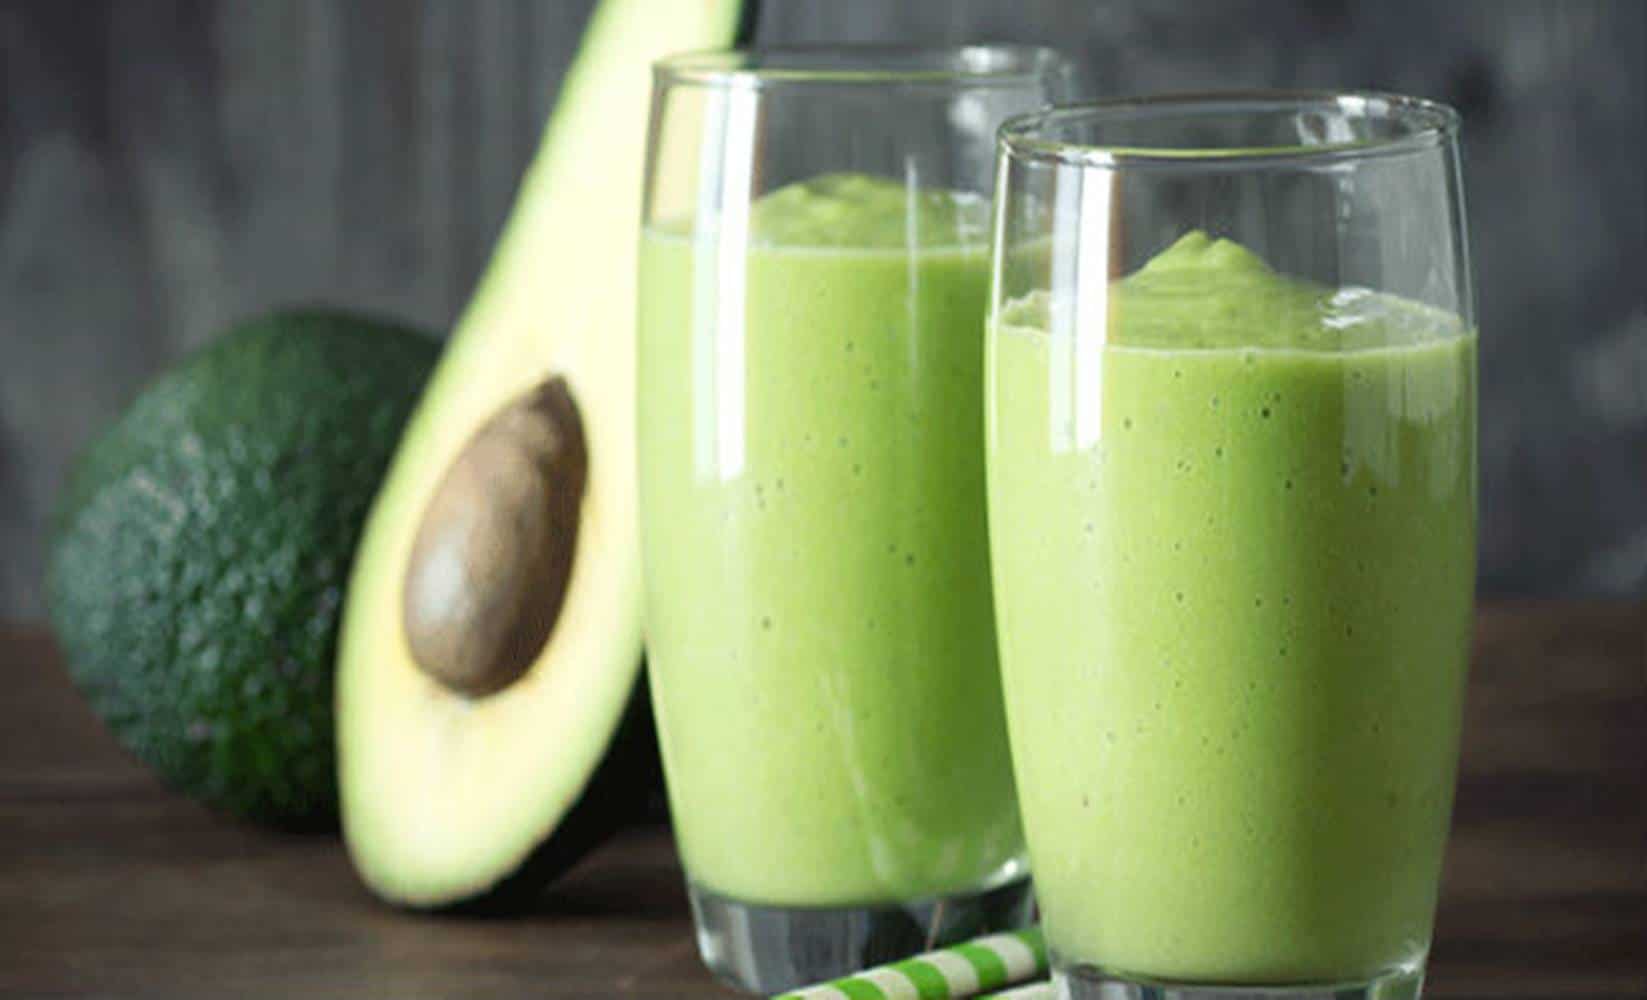 4 motivos para comer abacate – um deles é emagrecer